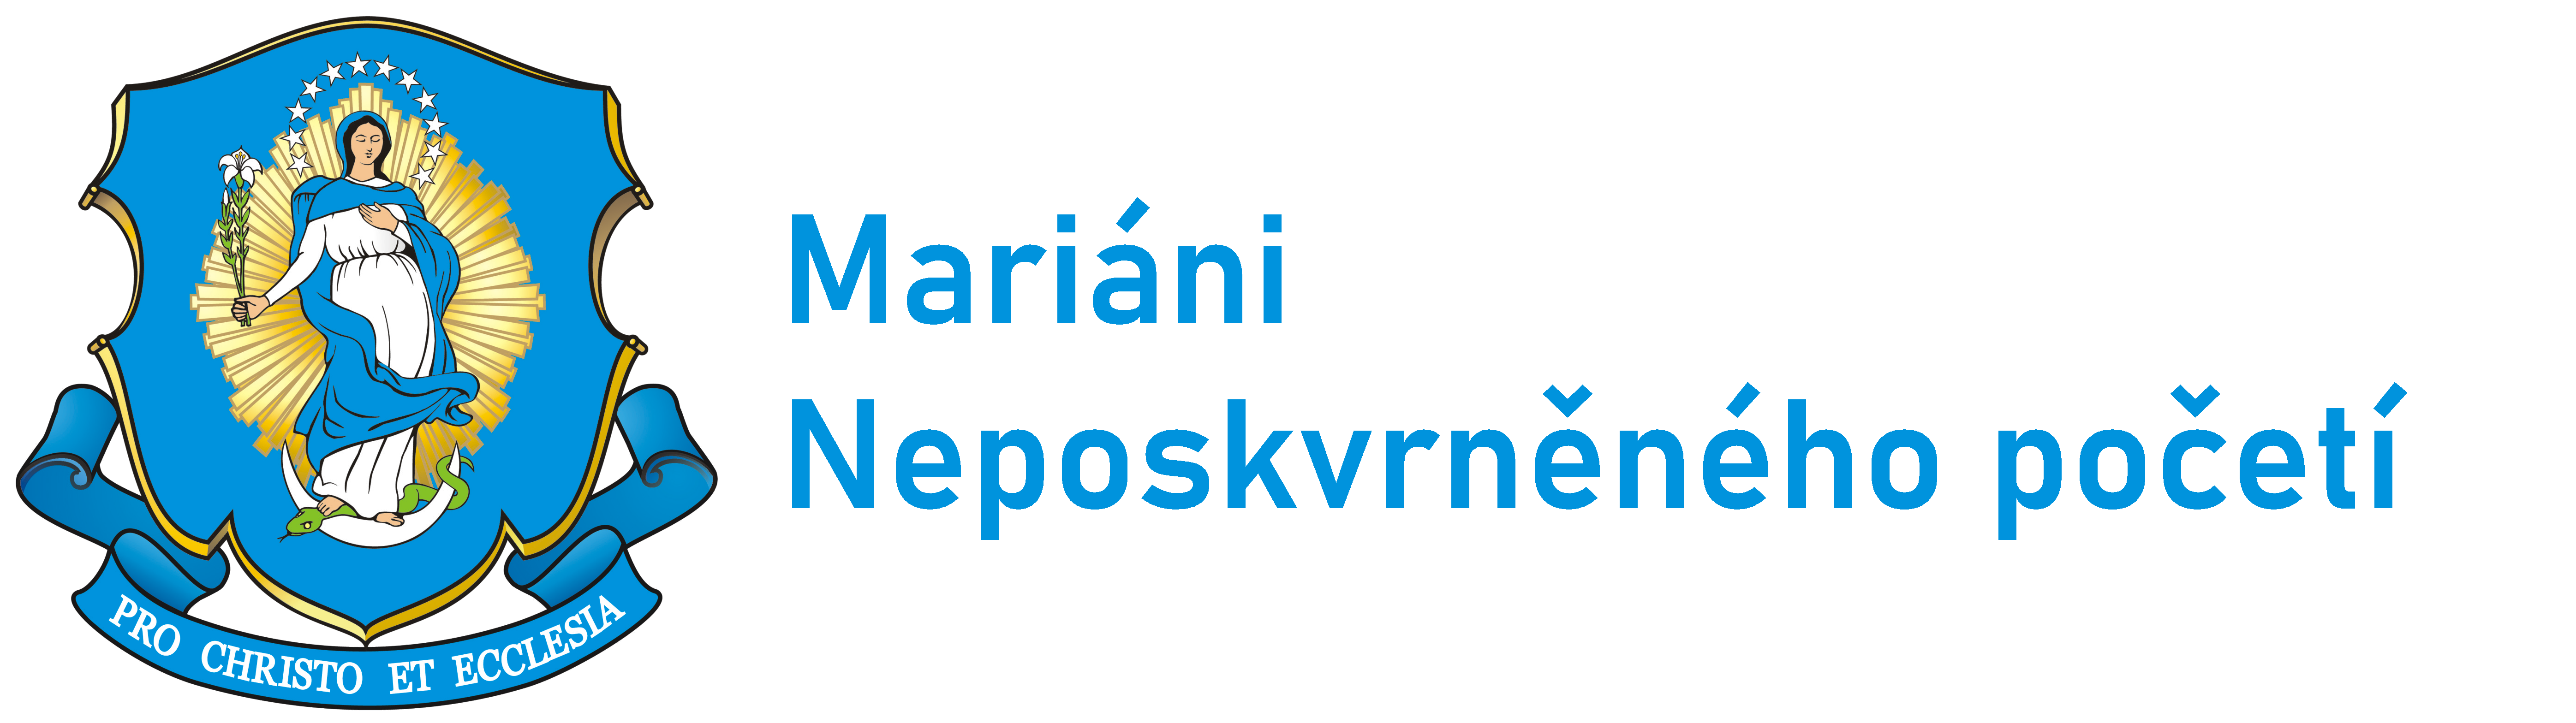 Logo Hymna  - Mariáni ČR